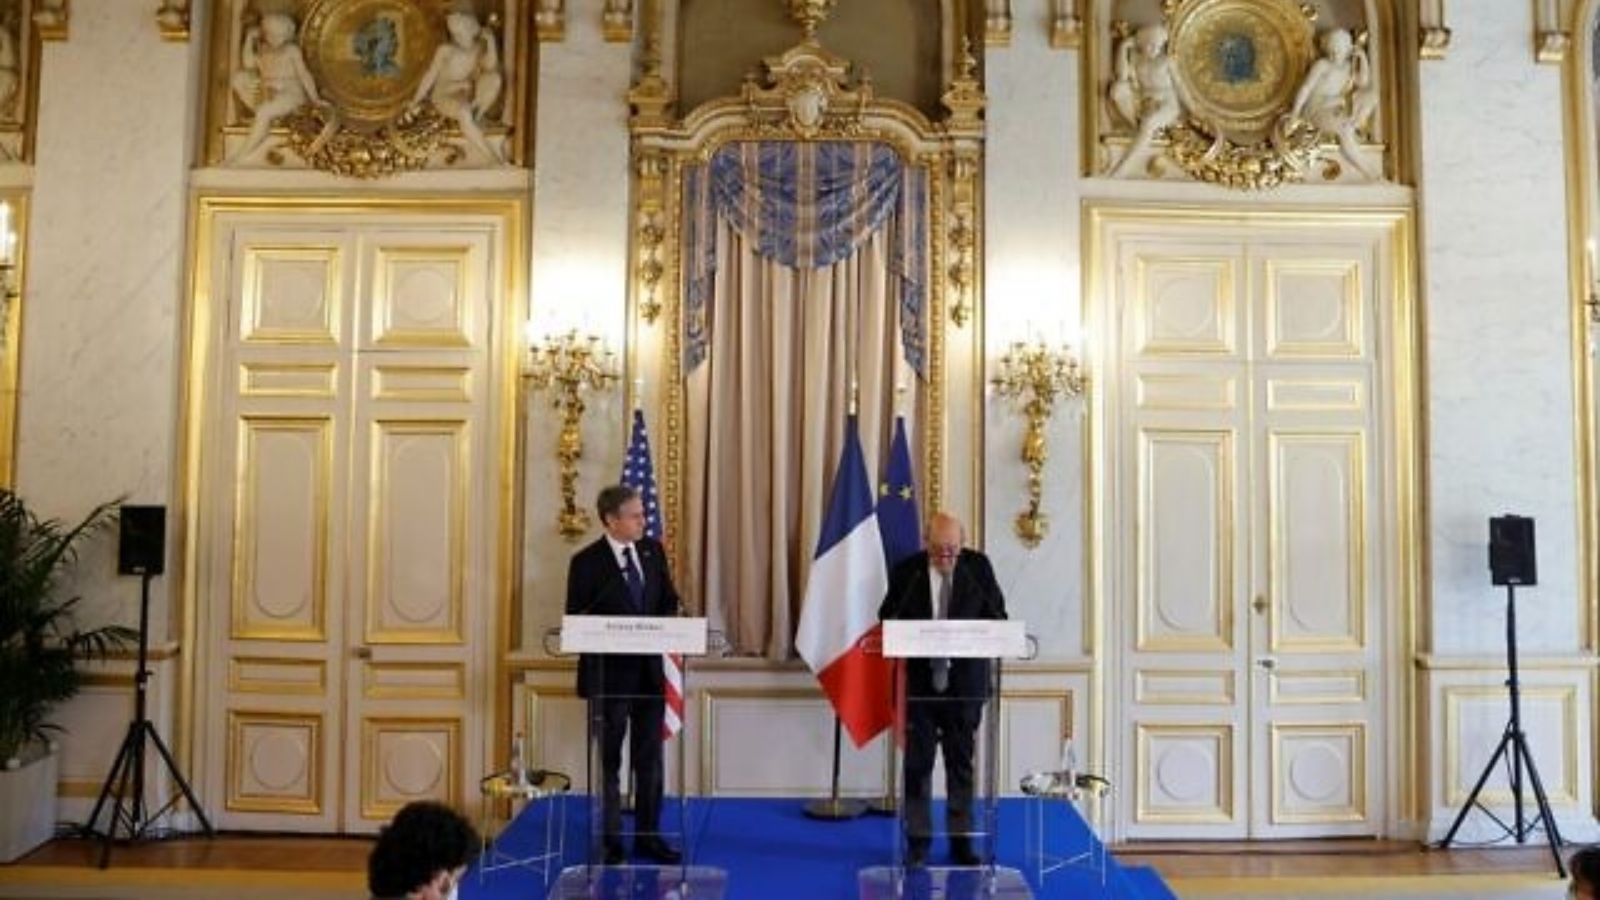 وزير الخارجية الأميركي أنتوني بلينكين (إلى اليسار) ووزير الخارجية الفرنسي جان إيف لودريان يحضران مؤتمرًا صحفيًا مشتركًا في وزارة الخارجية الفرنسية في باريس. بتاريخ 25 حزيران/ يونيو 2021.